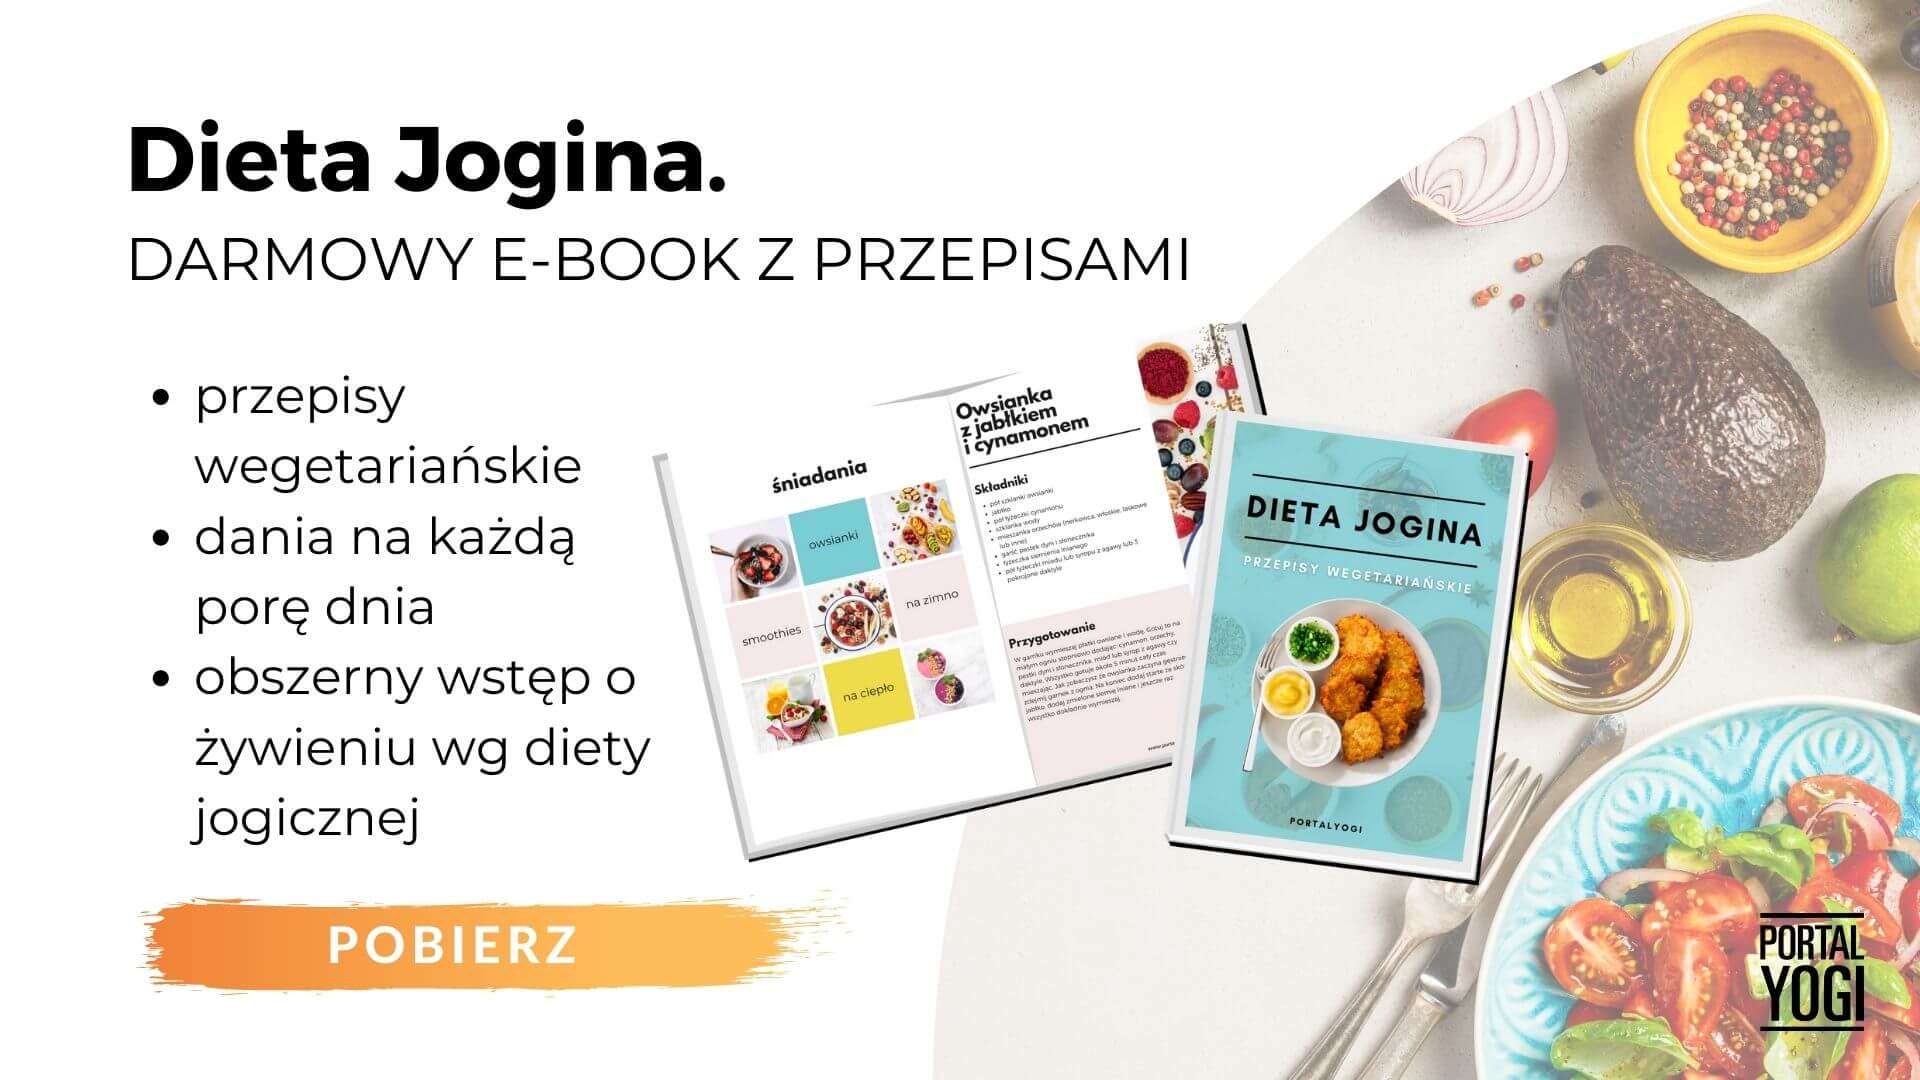 pobierz e-book dieta jogina wegetariańskie przepisy